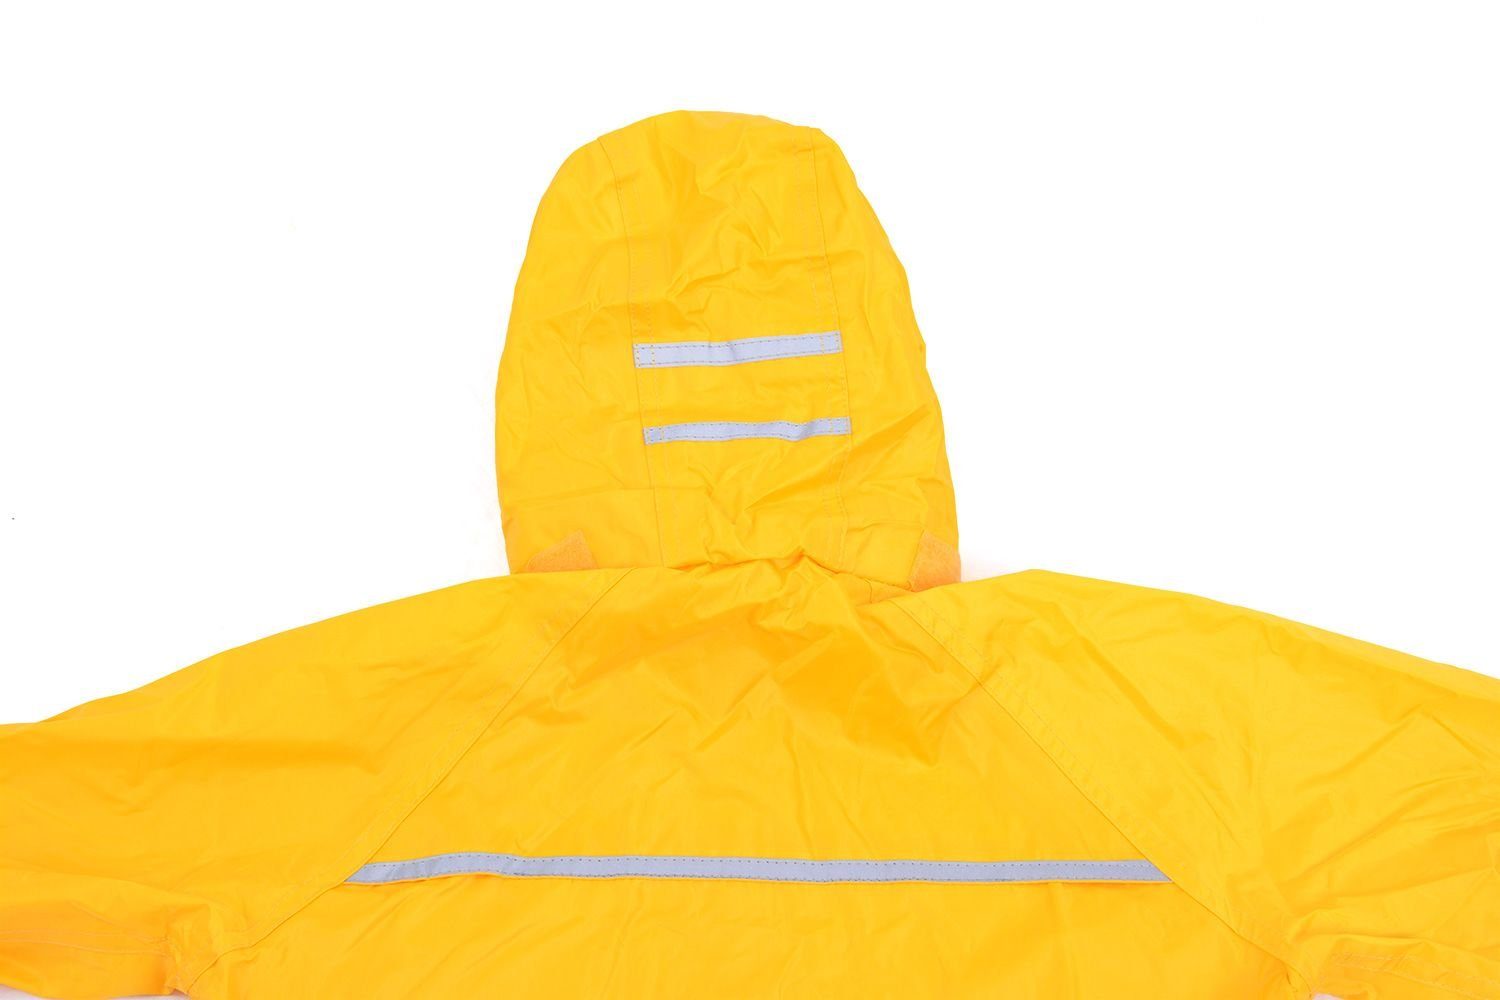 DRY KIDS Regenanzug Wasserdichtes Regenanzug-Set, Regenbekleidung (1-tlg), Kinder reflektierende Gelb